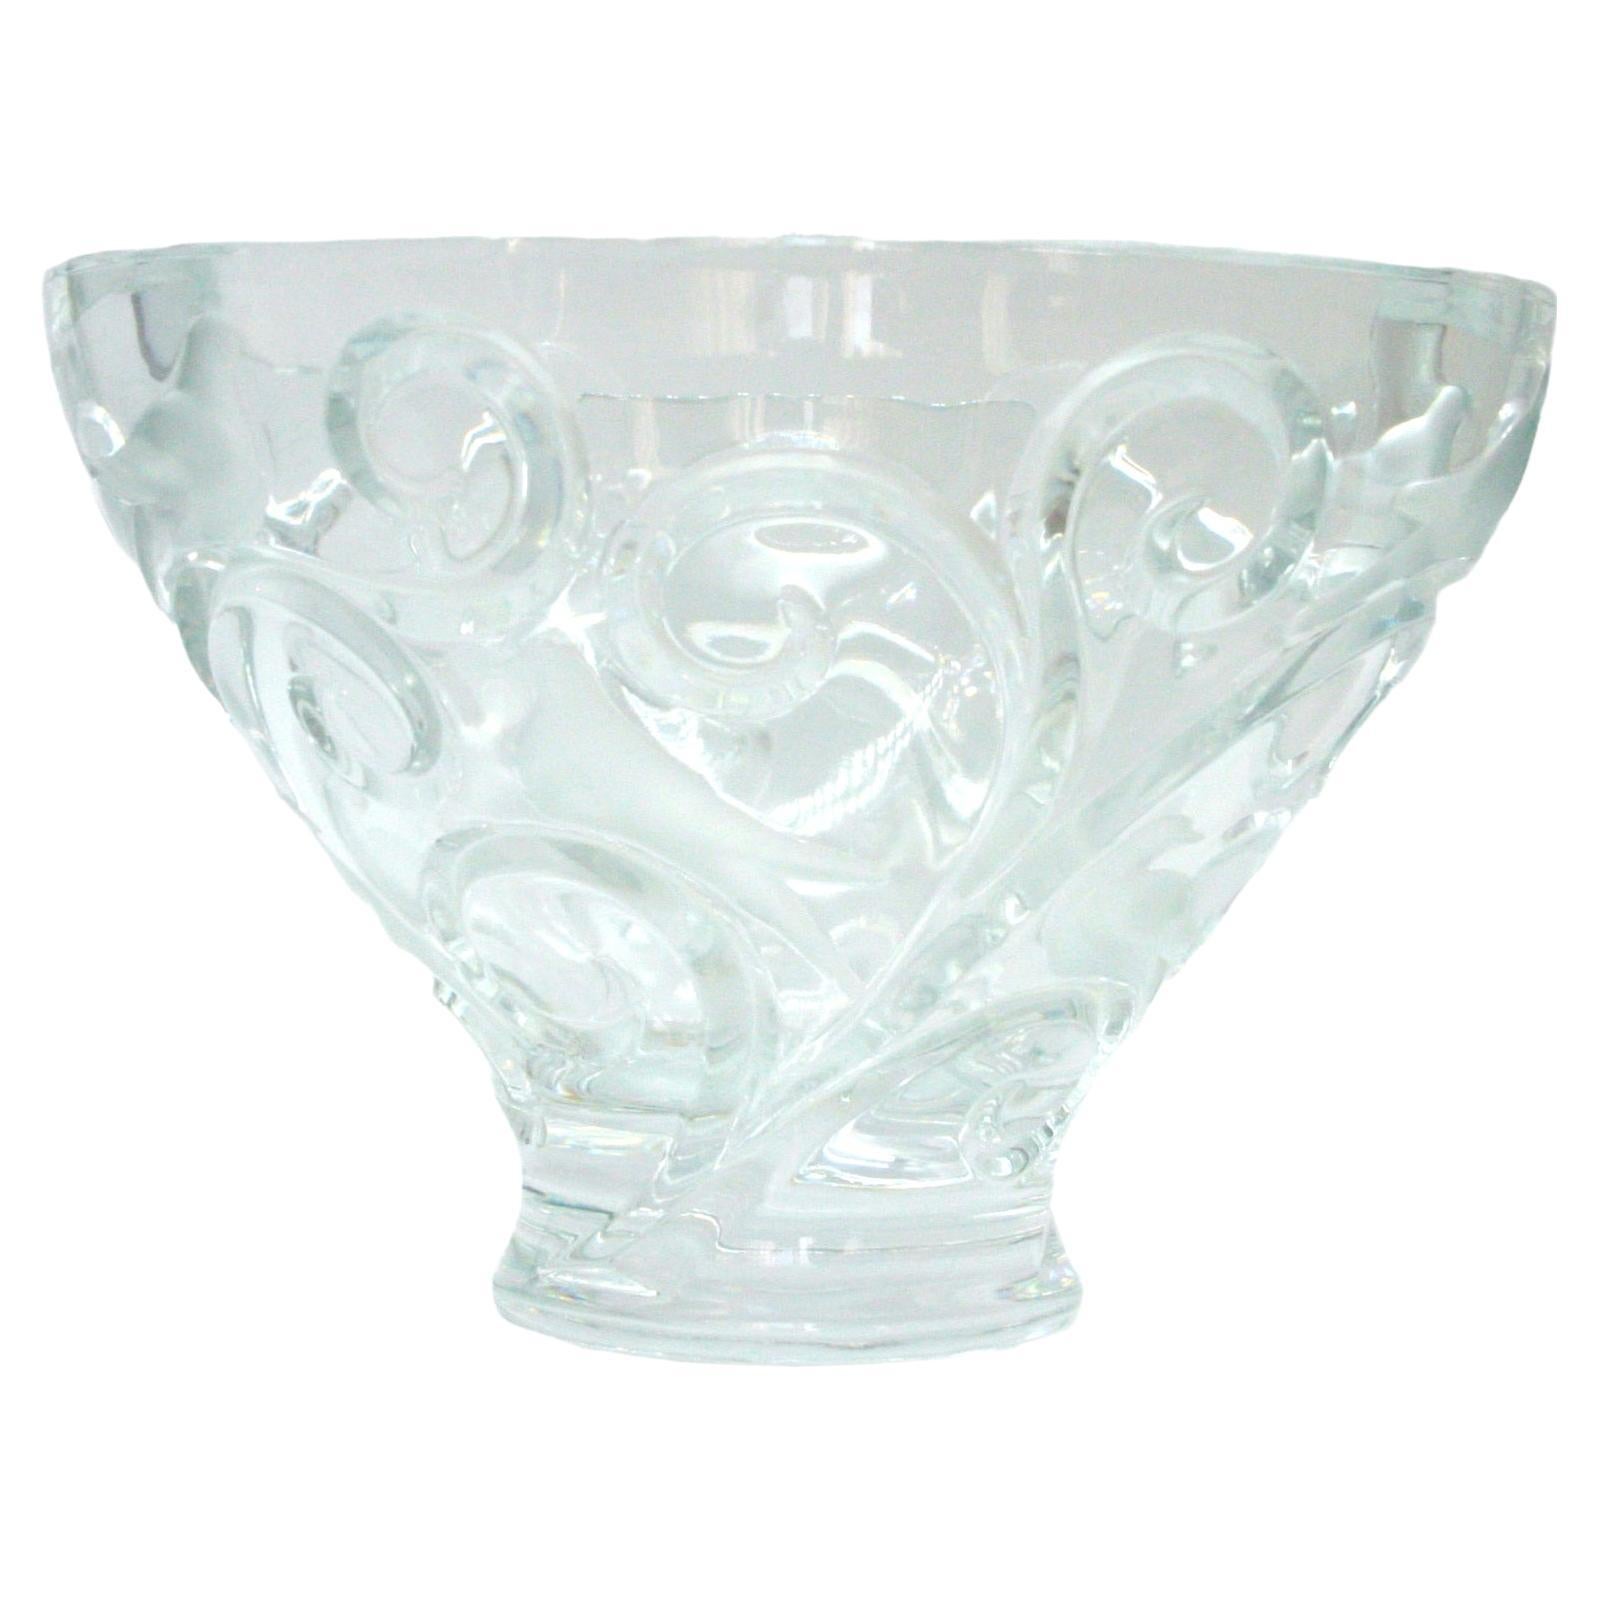 Large Lalique Crystal Bowl Centerpiece